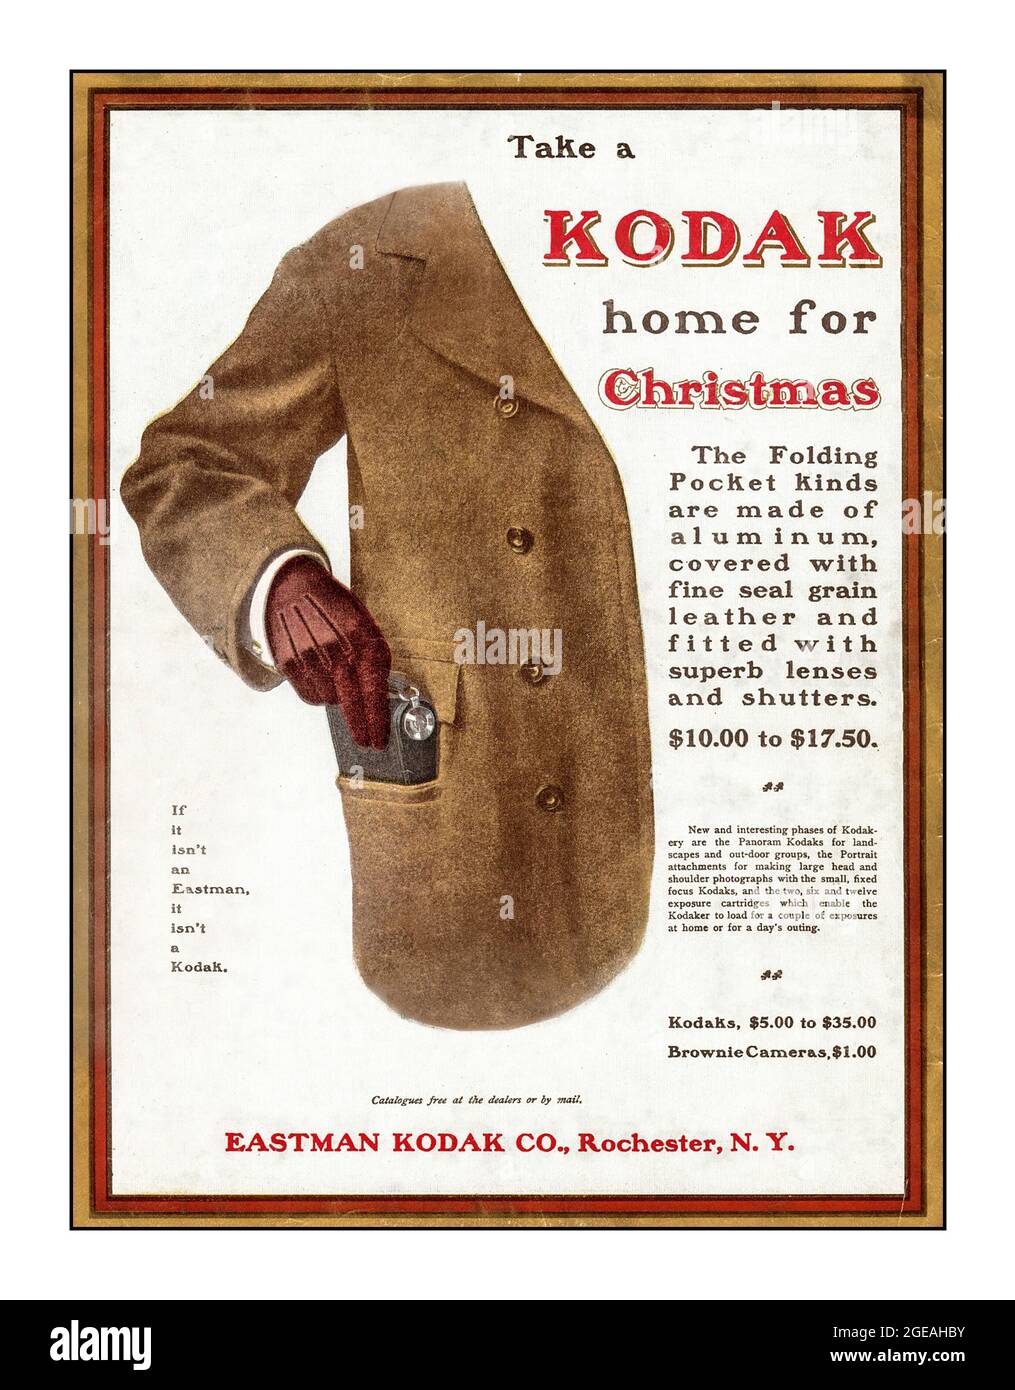 Vintage 1900s Kodak Press annonce pour un appareil photo de poche pliable « empatez une maison Kodak pour Noël » illustrant un homme bien habillé glissant un appareil photo Kodak dans sa poche Eastman Kodak Company Rochester New York USA Banque D'Images